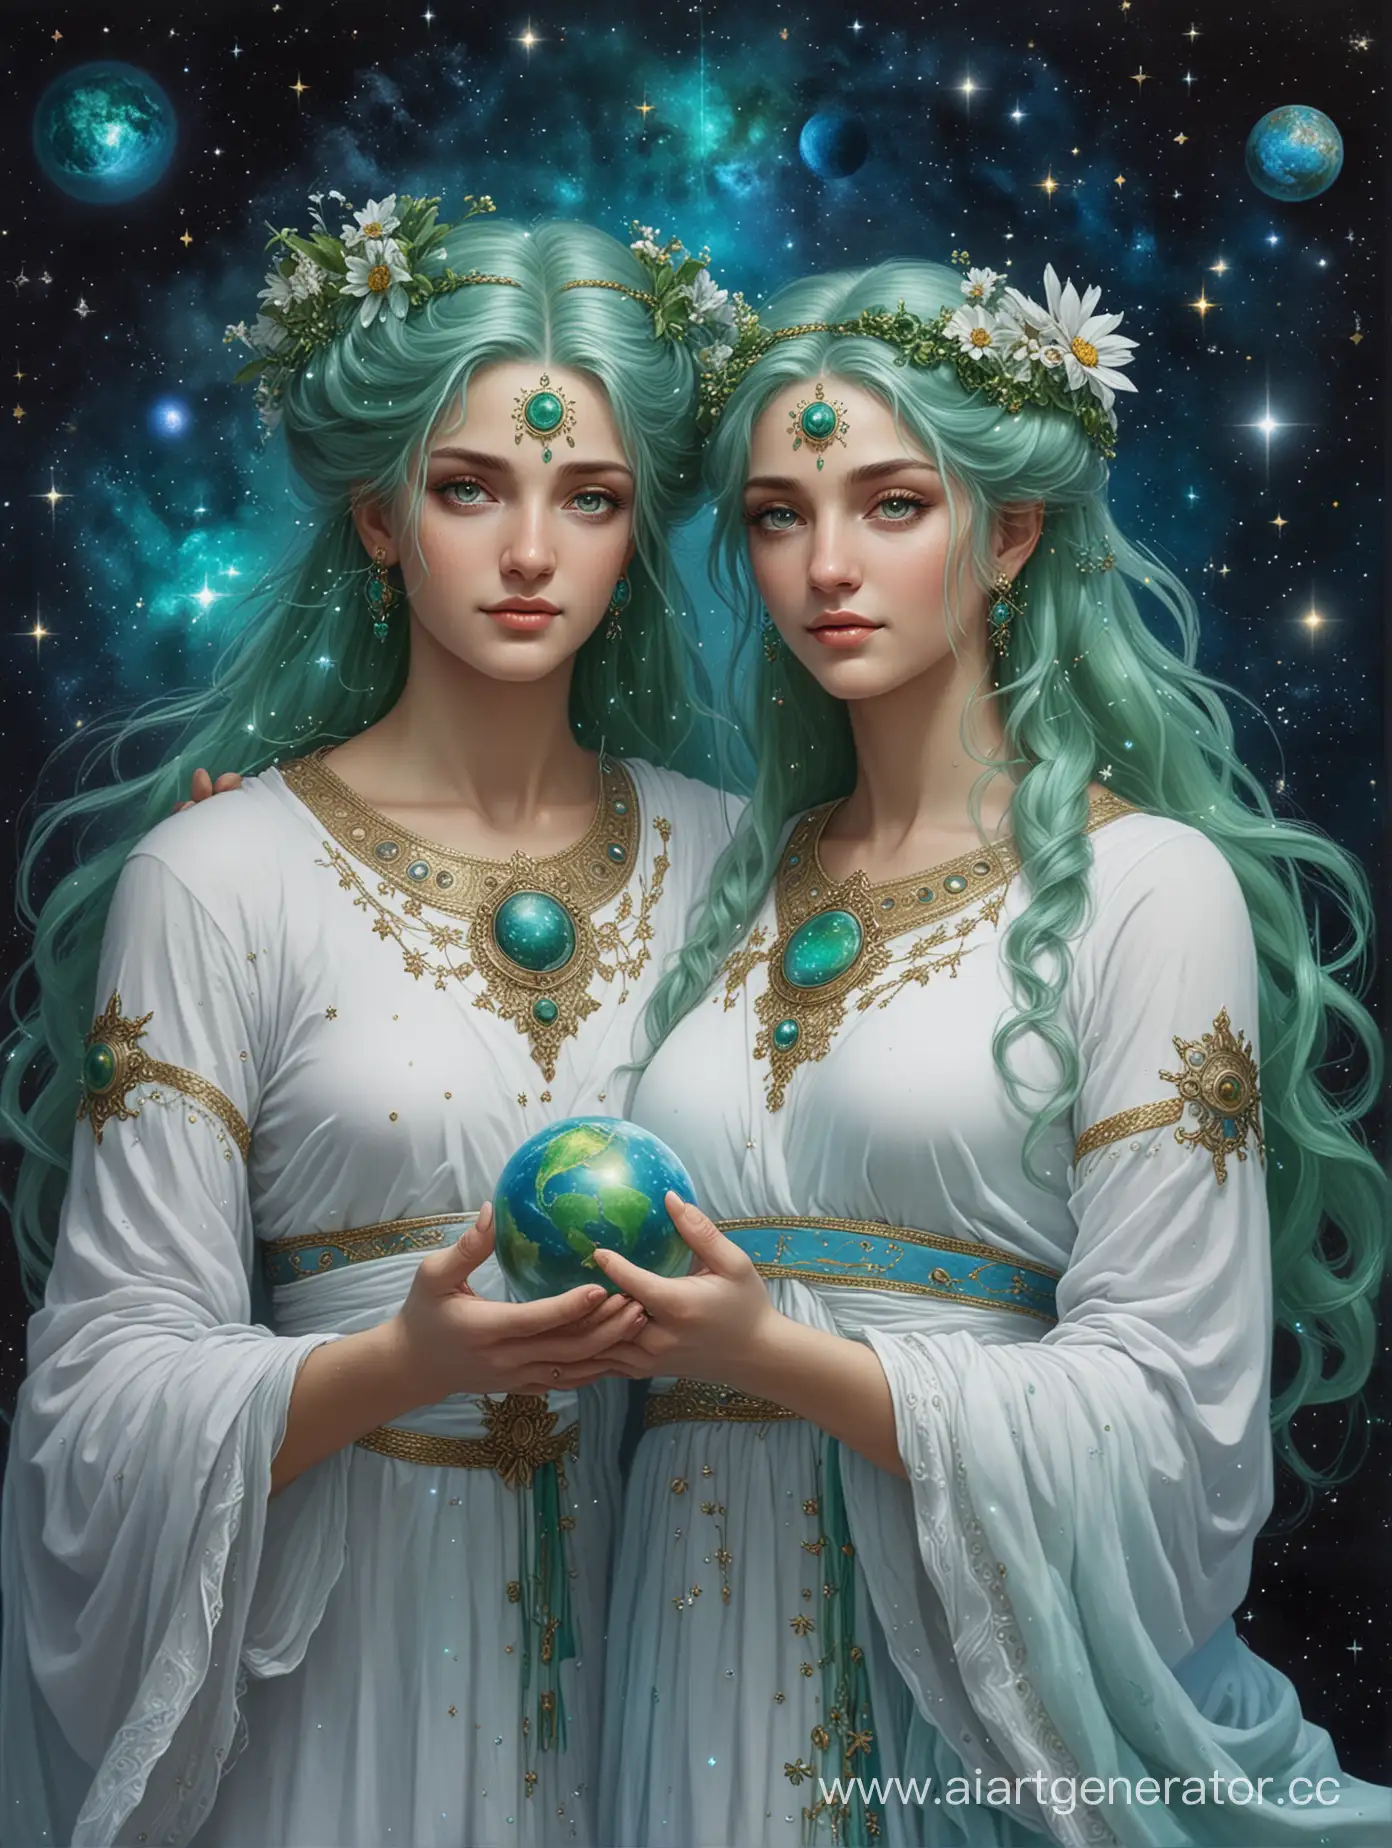 Богиня и бог космоса, с зелеными глазами, со звездами в волосах и планетами в руках, в бело-голубом одеянии, любят своих верующих